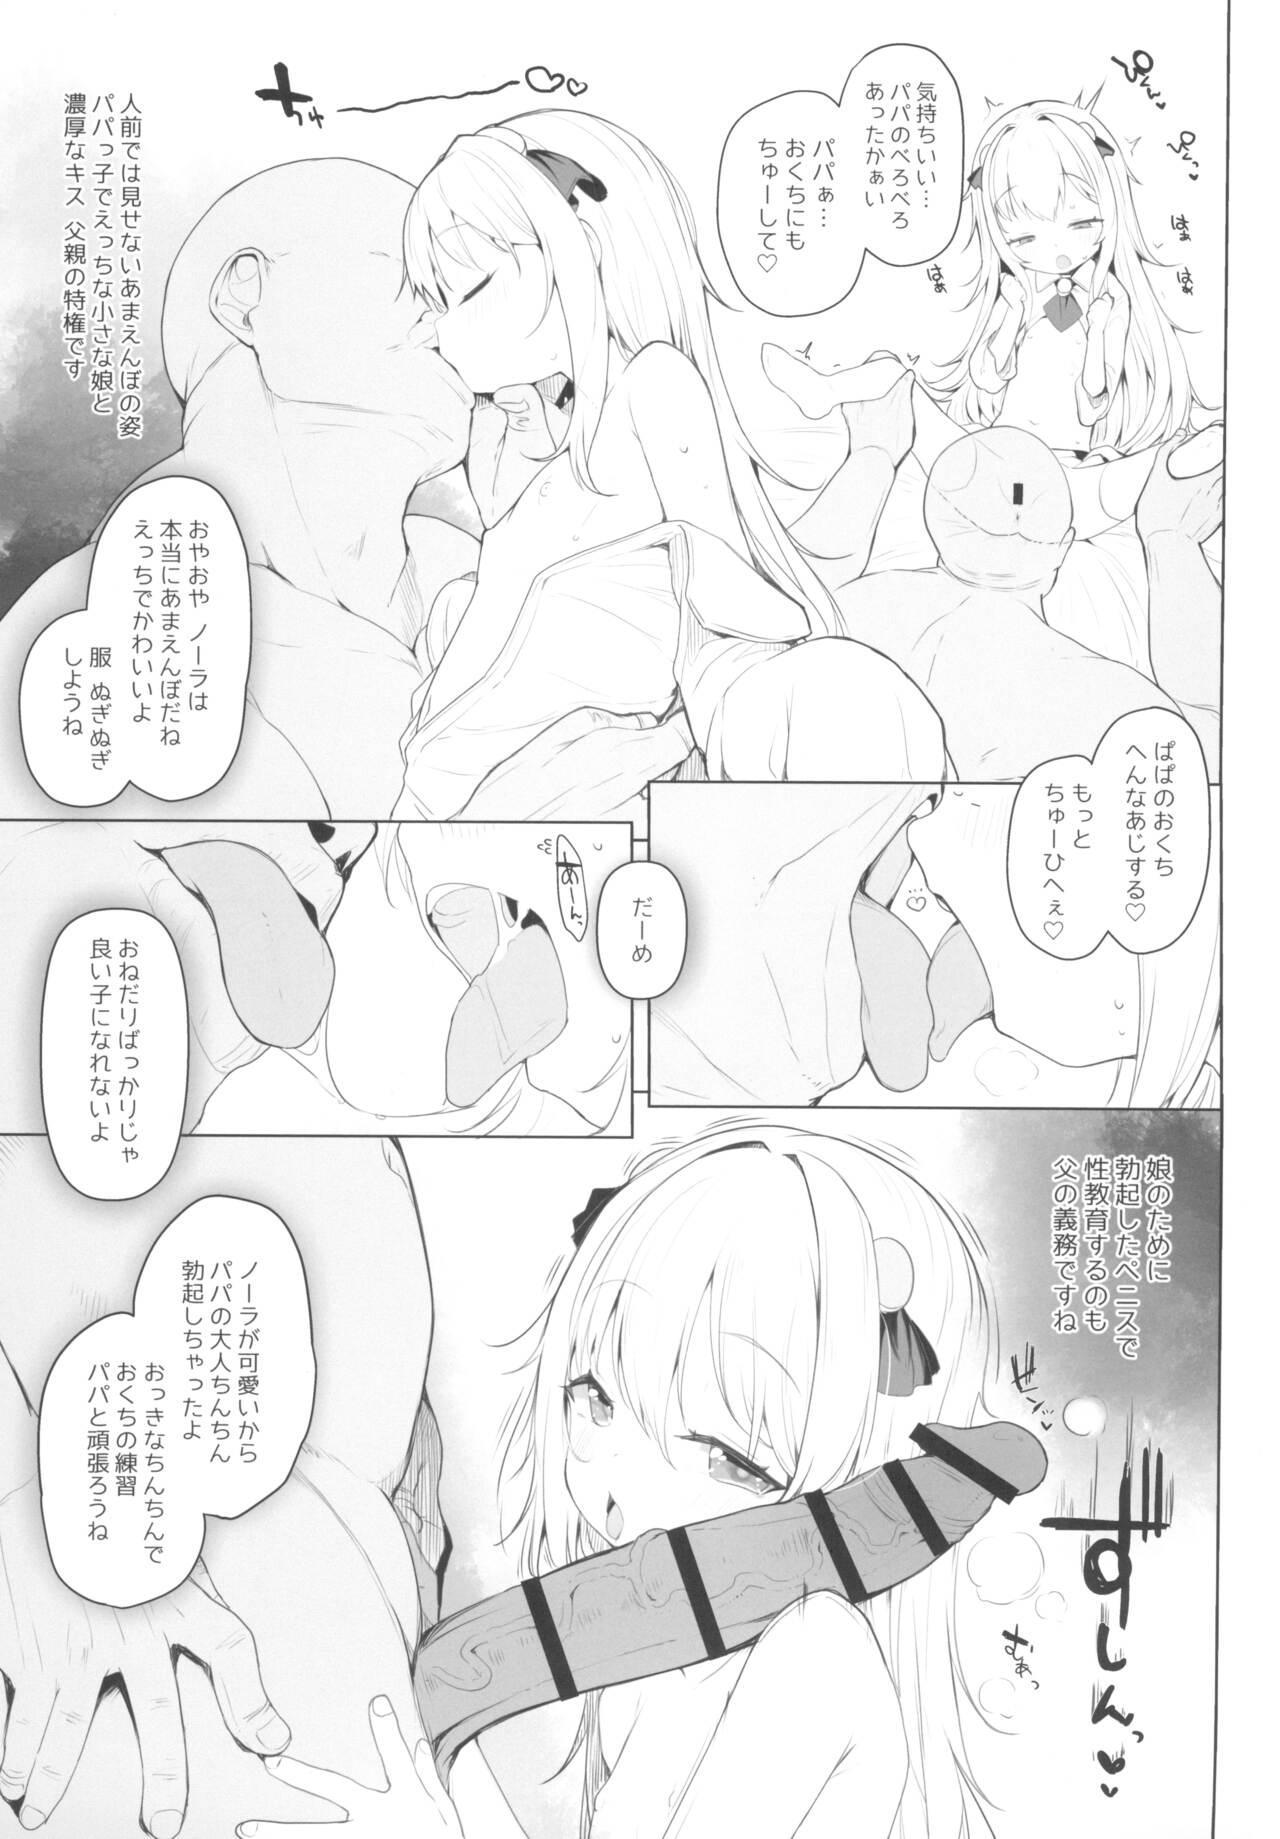 Street Kawaiianoko wa jinsei o kawa reteiru junbi gou. Ver Negao - Page 7